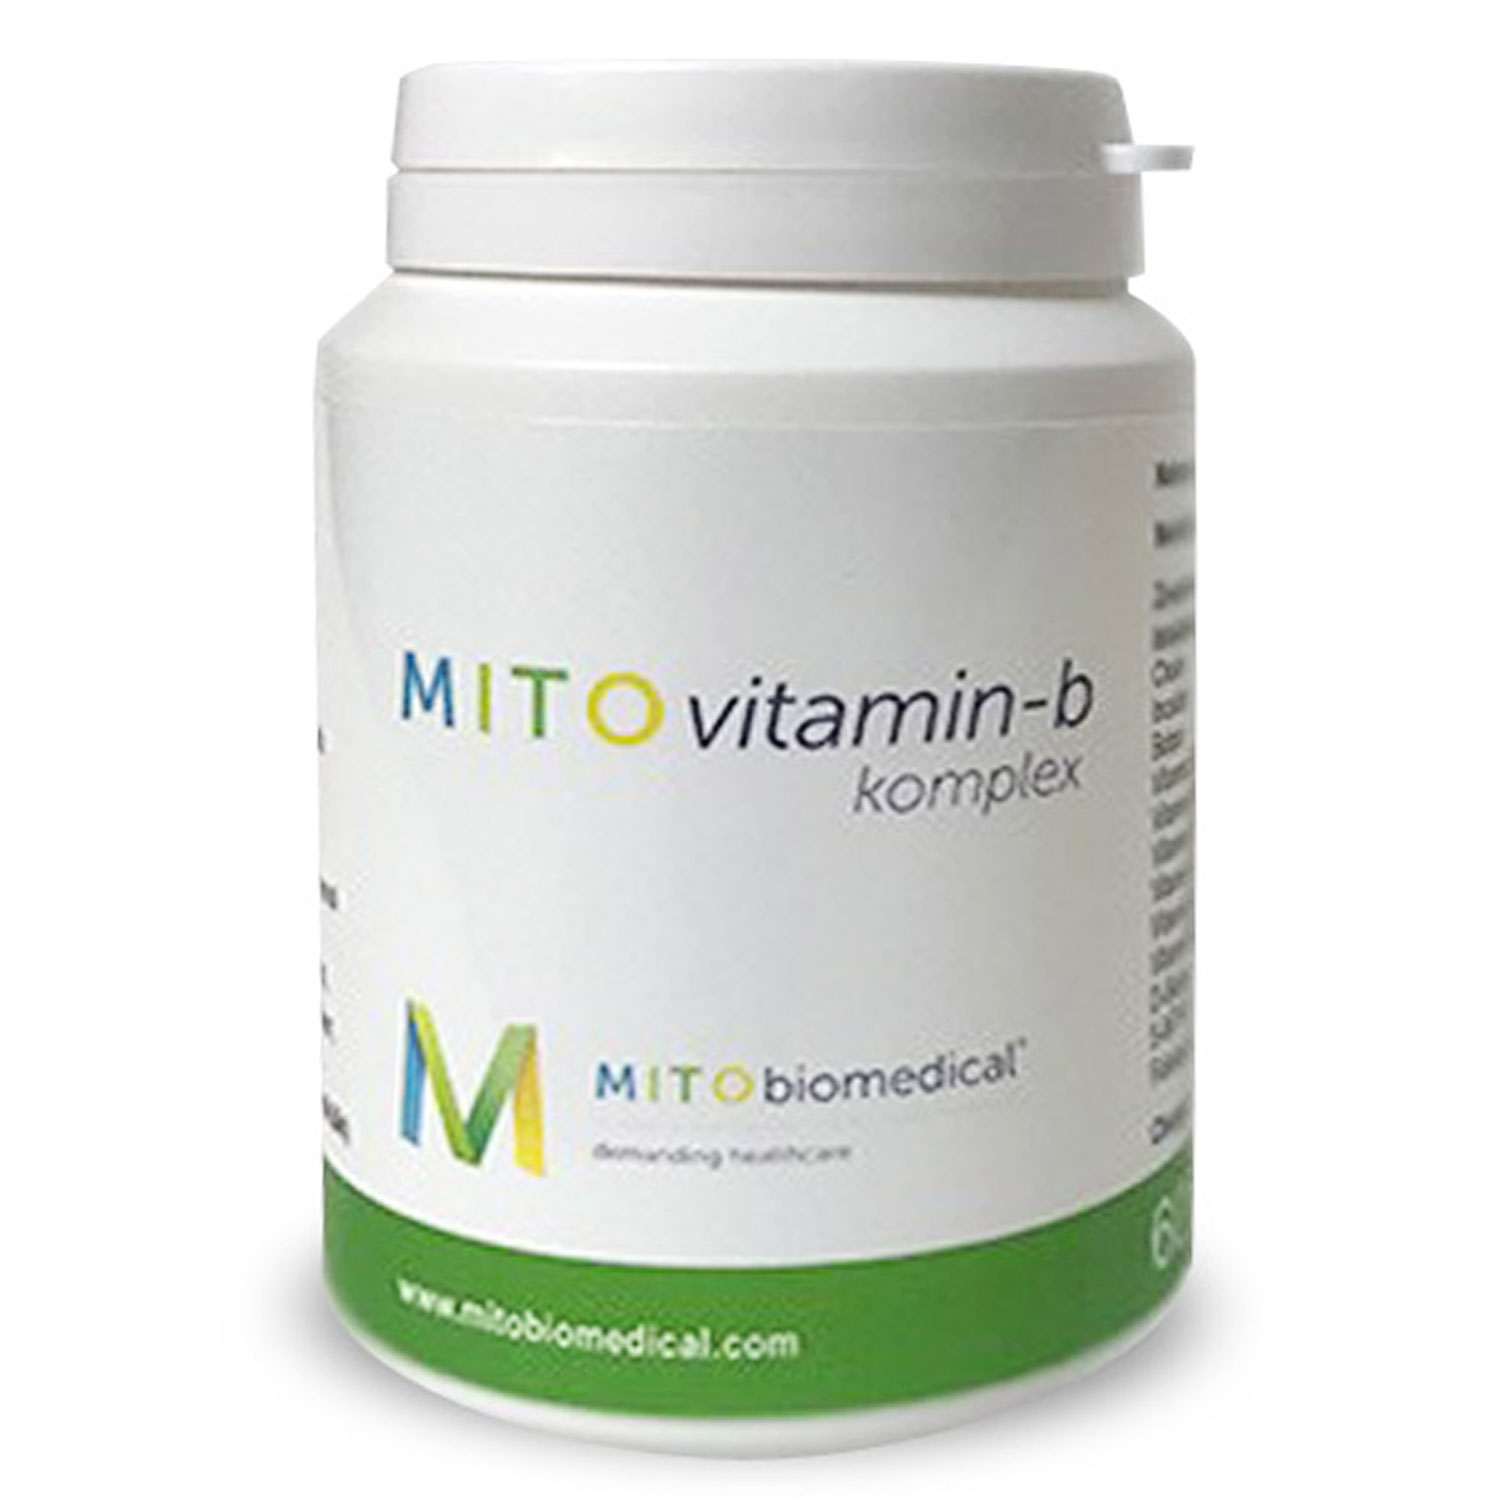 MITO Vitamin-B Komplex von Mitobiomedical - 60 Kapseln